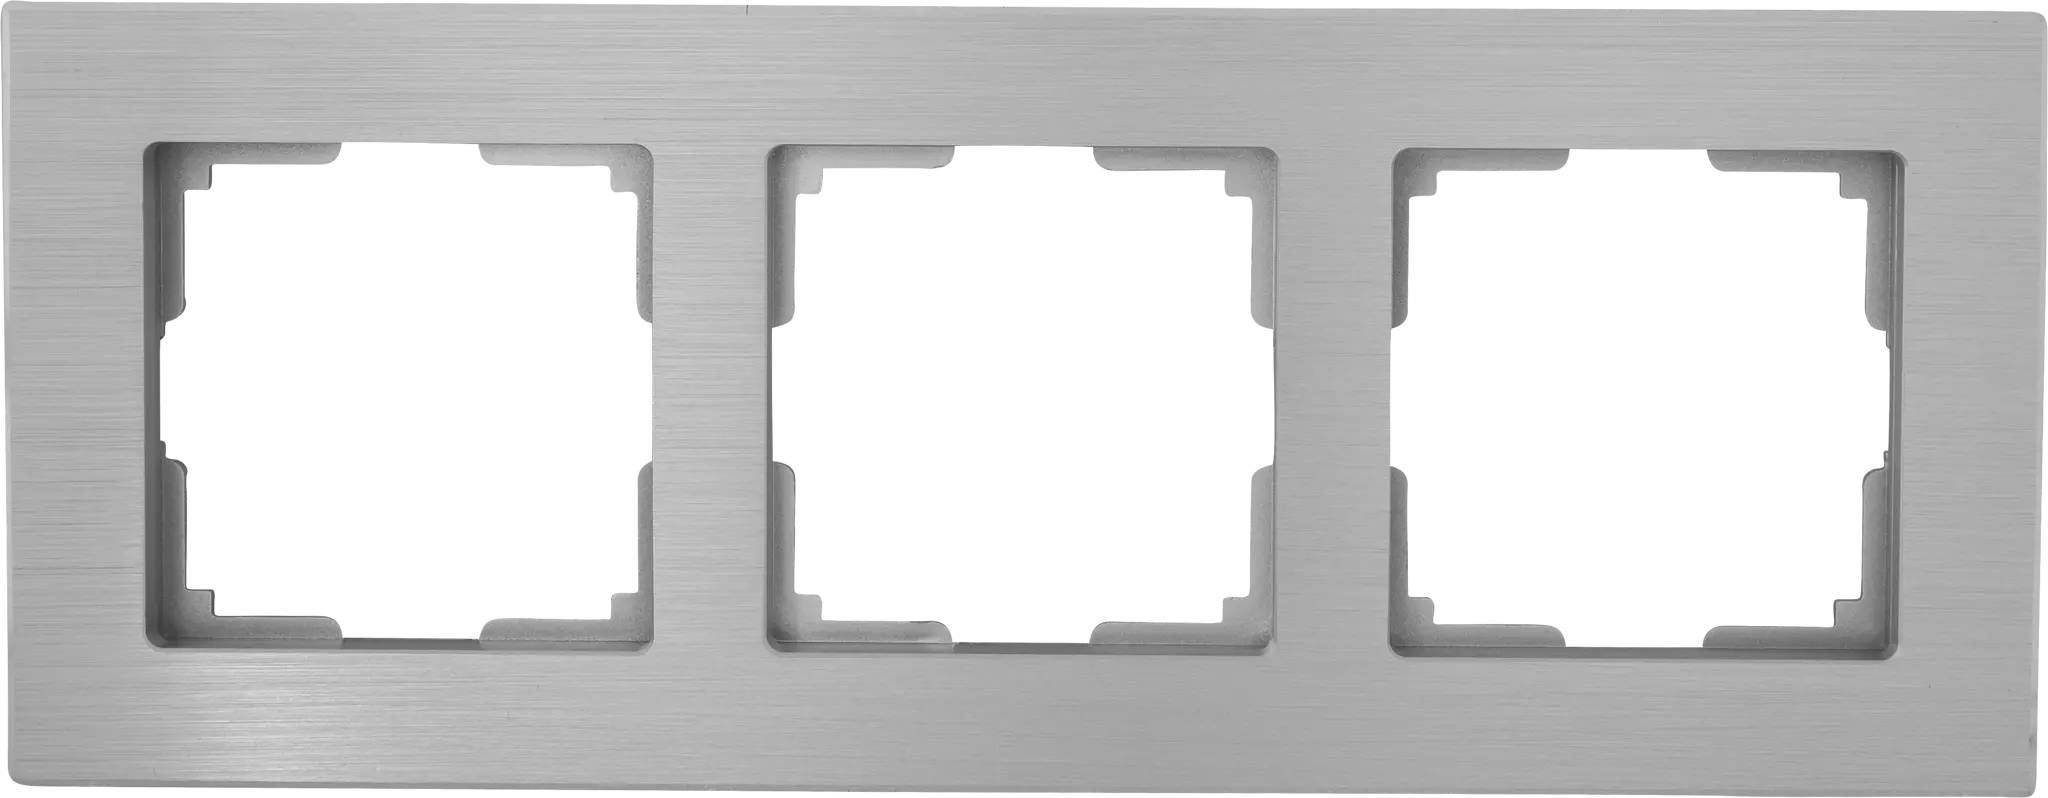 Рамка для розеток и выключателей Werkel Aluminium 3 поста, металл, цвет алюминий рамка на 4 поста werkel aluminium w0041714 4690389158209